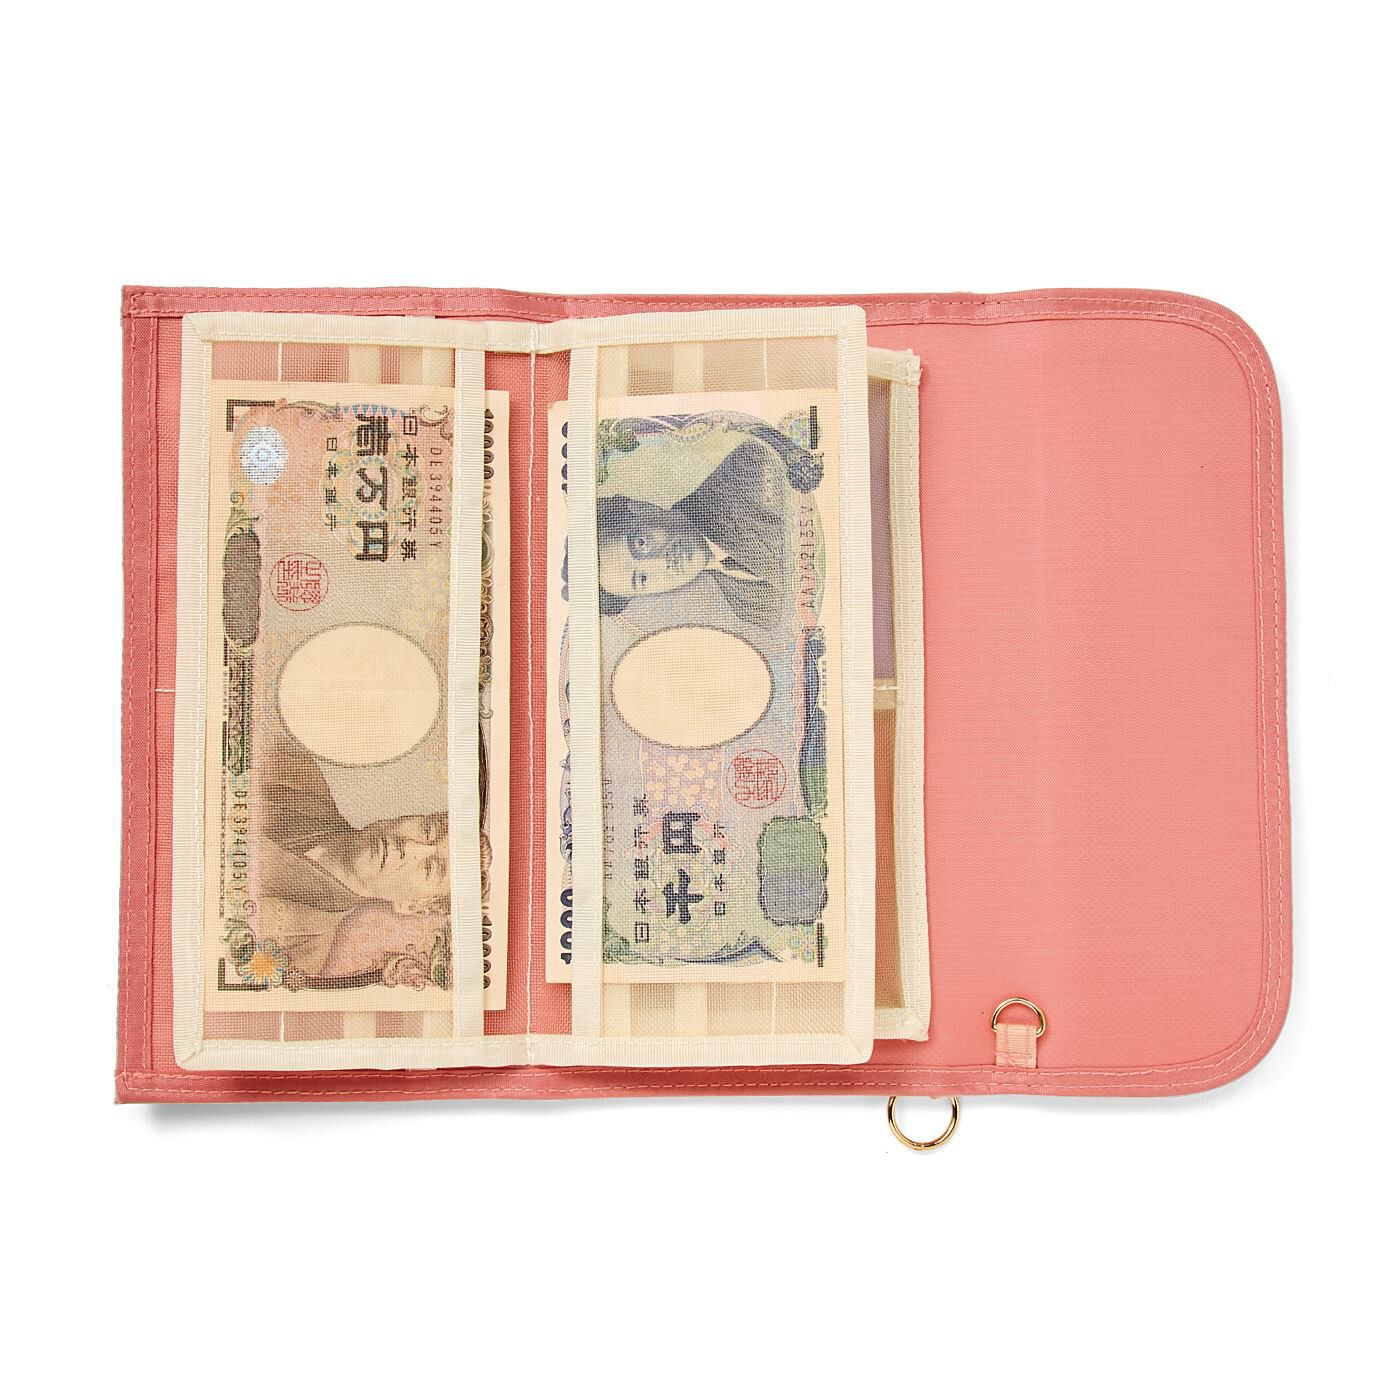 C.C.P|LITALICO×CCP　見渡しやすさ&つかみ取りやすさ抜群 スマホも入る透けるメッシュ財布〈ピンク〉|お札も分けて収納可能。透けて見えるのでひと目で把握できます。